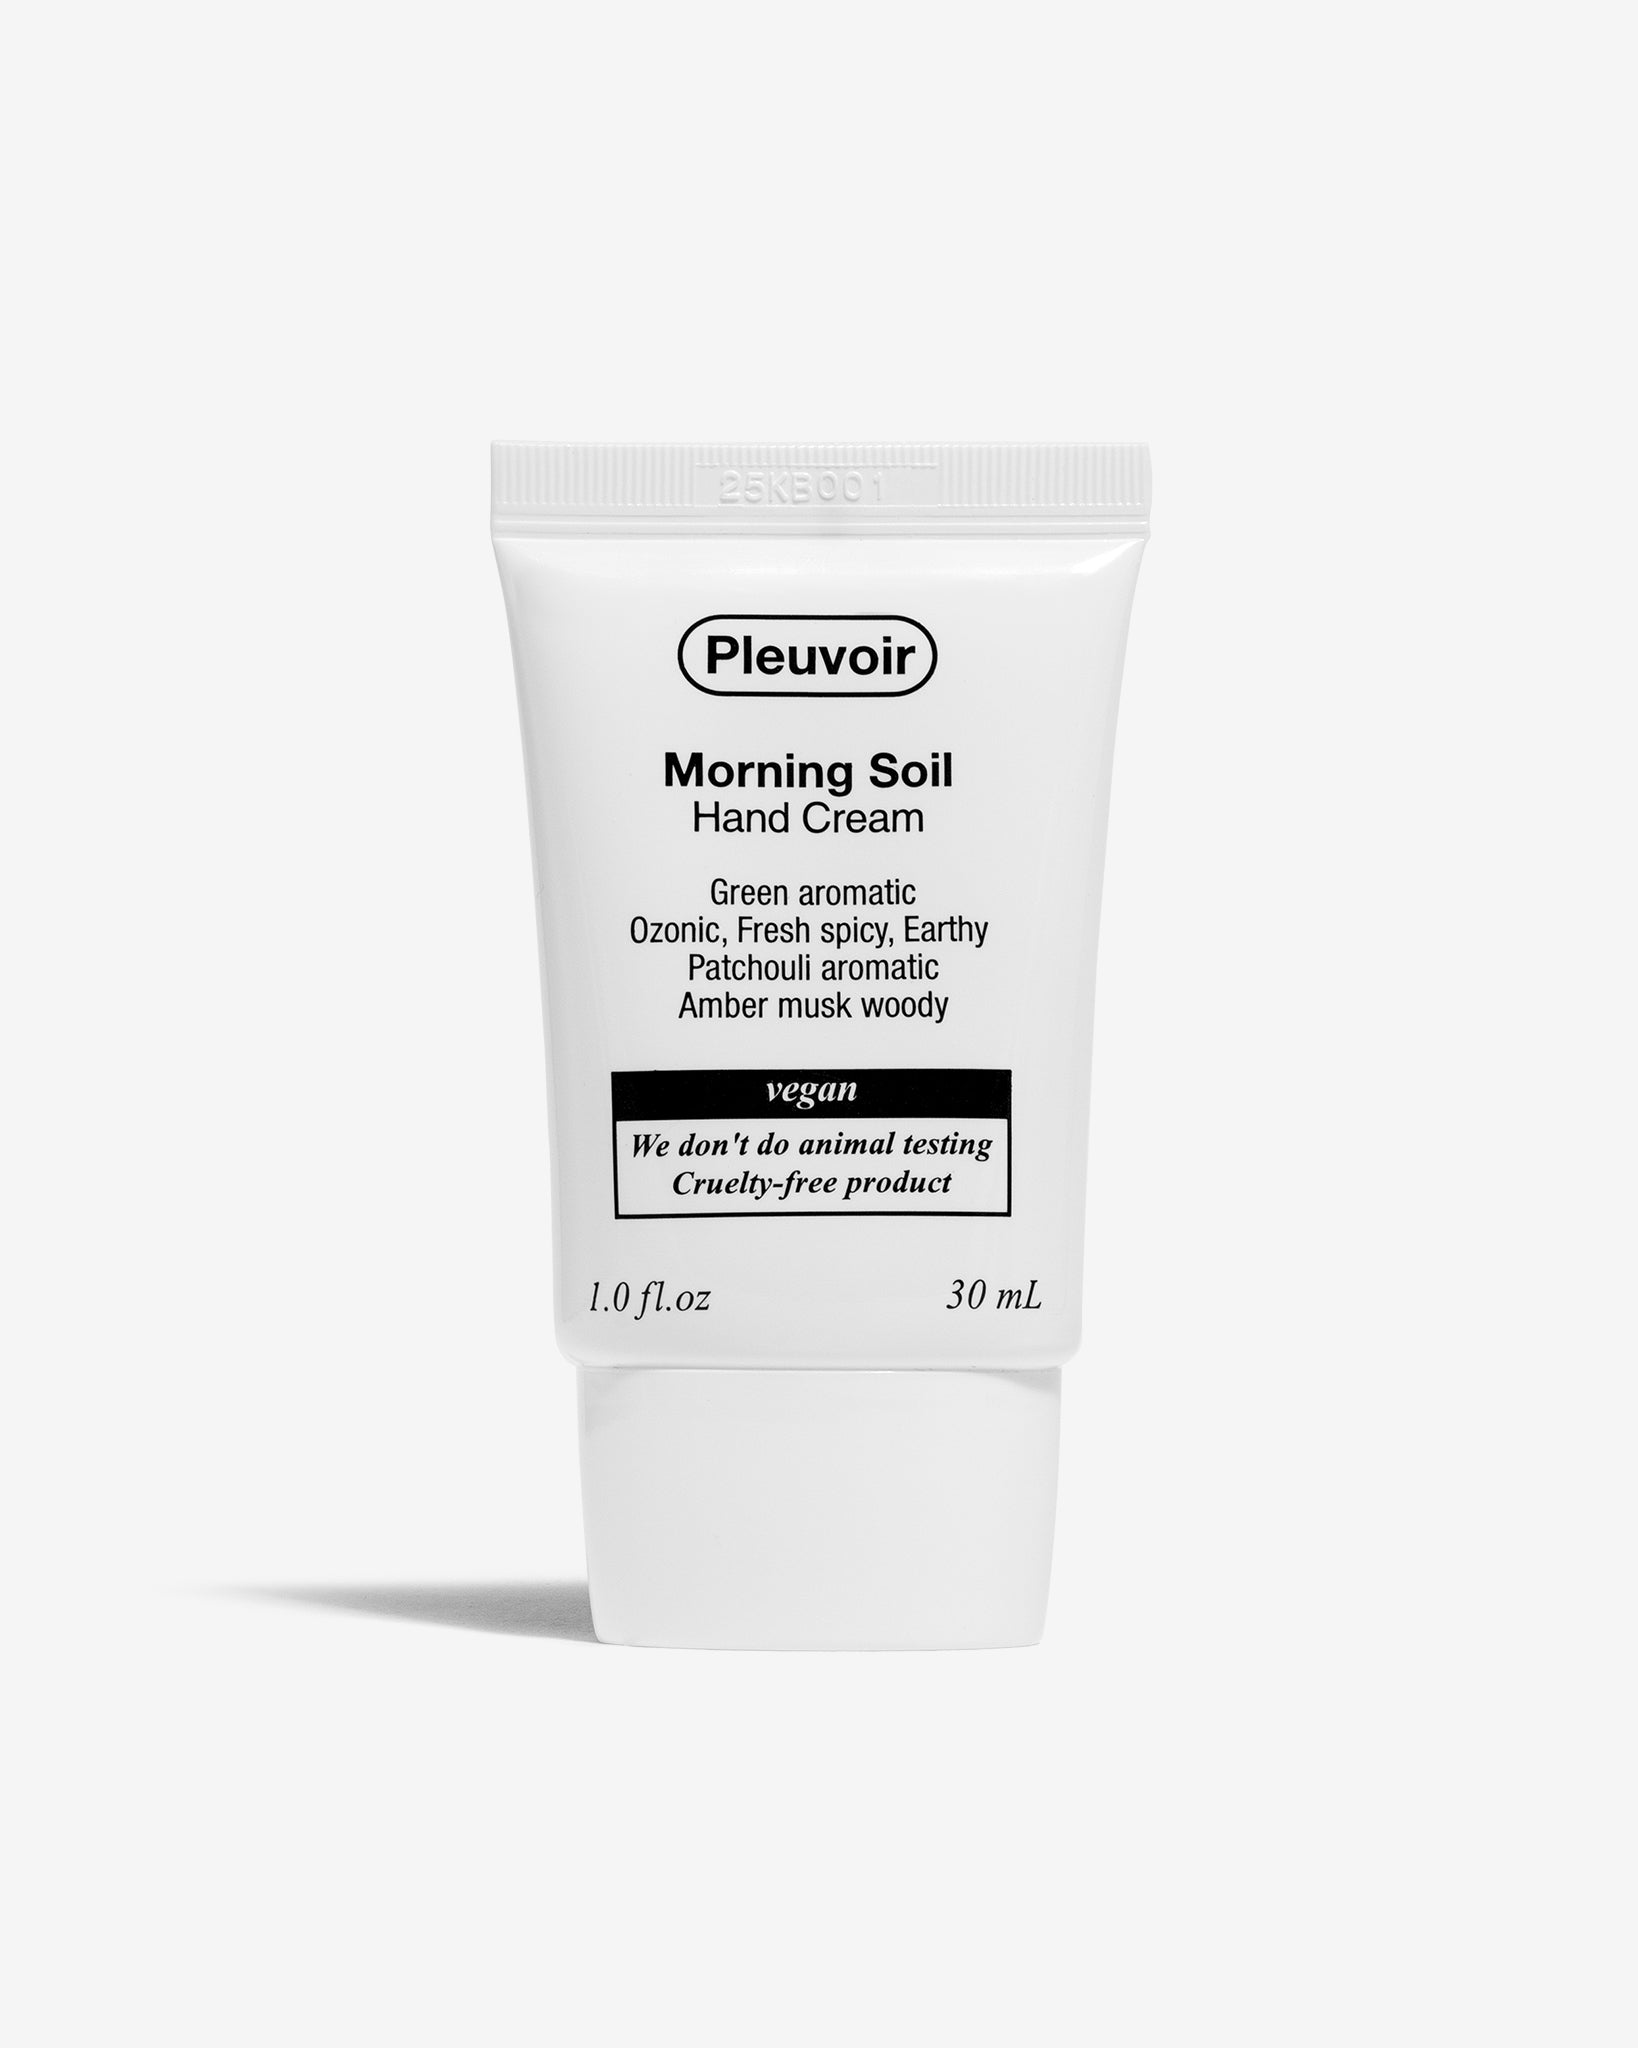 Morning Soil Hand Cream (Crema de manos pachulí)